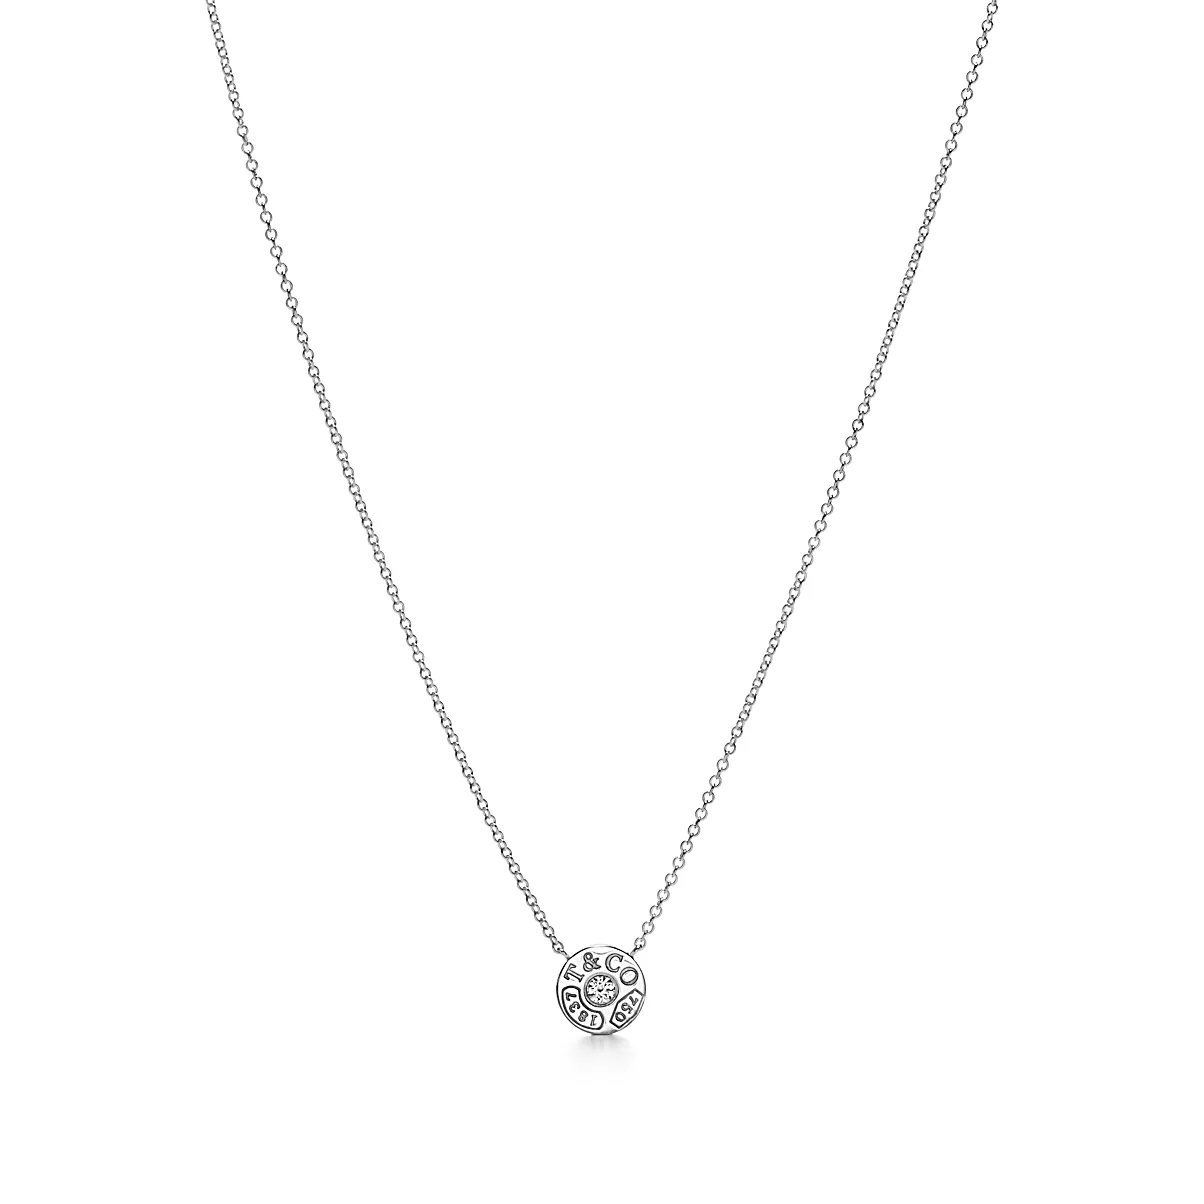 Tiffany 1837 Pendant w/Chain 18K 화이트 골드와 팔라듐 라운드 브릴리언트 다이아몬드 One Scale